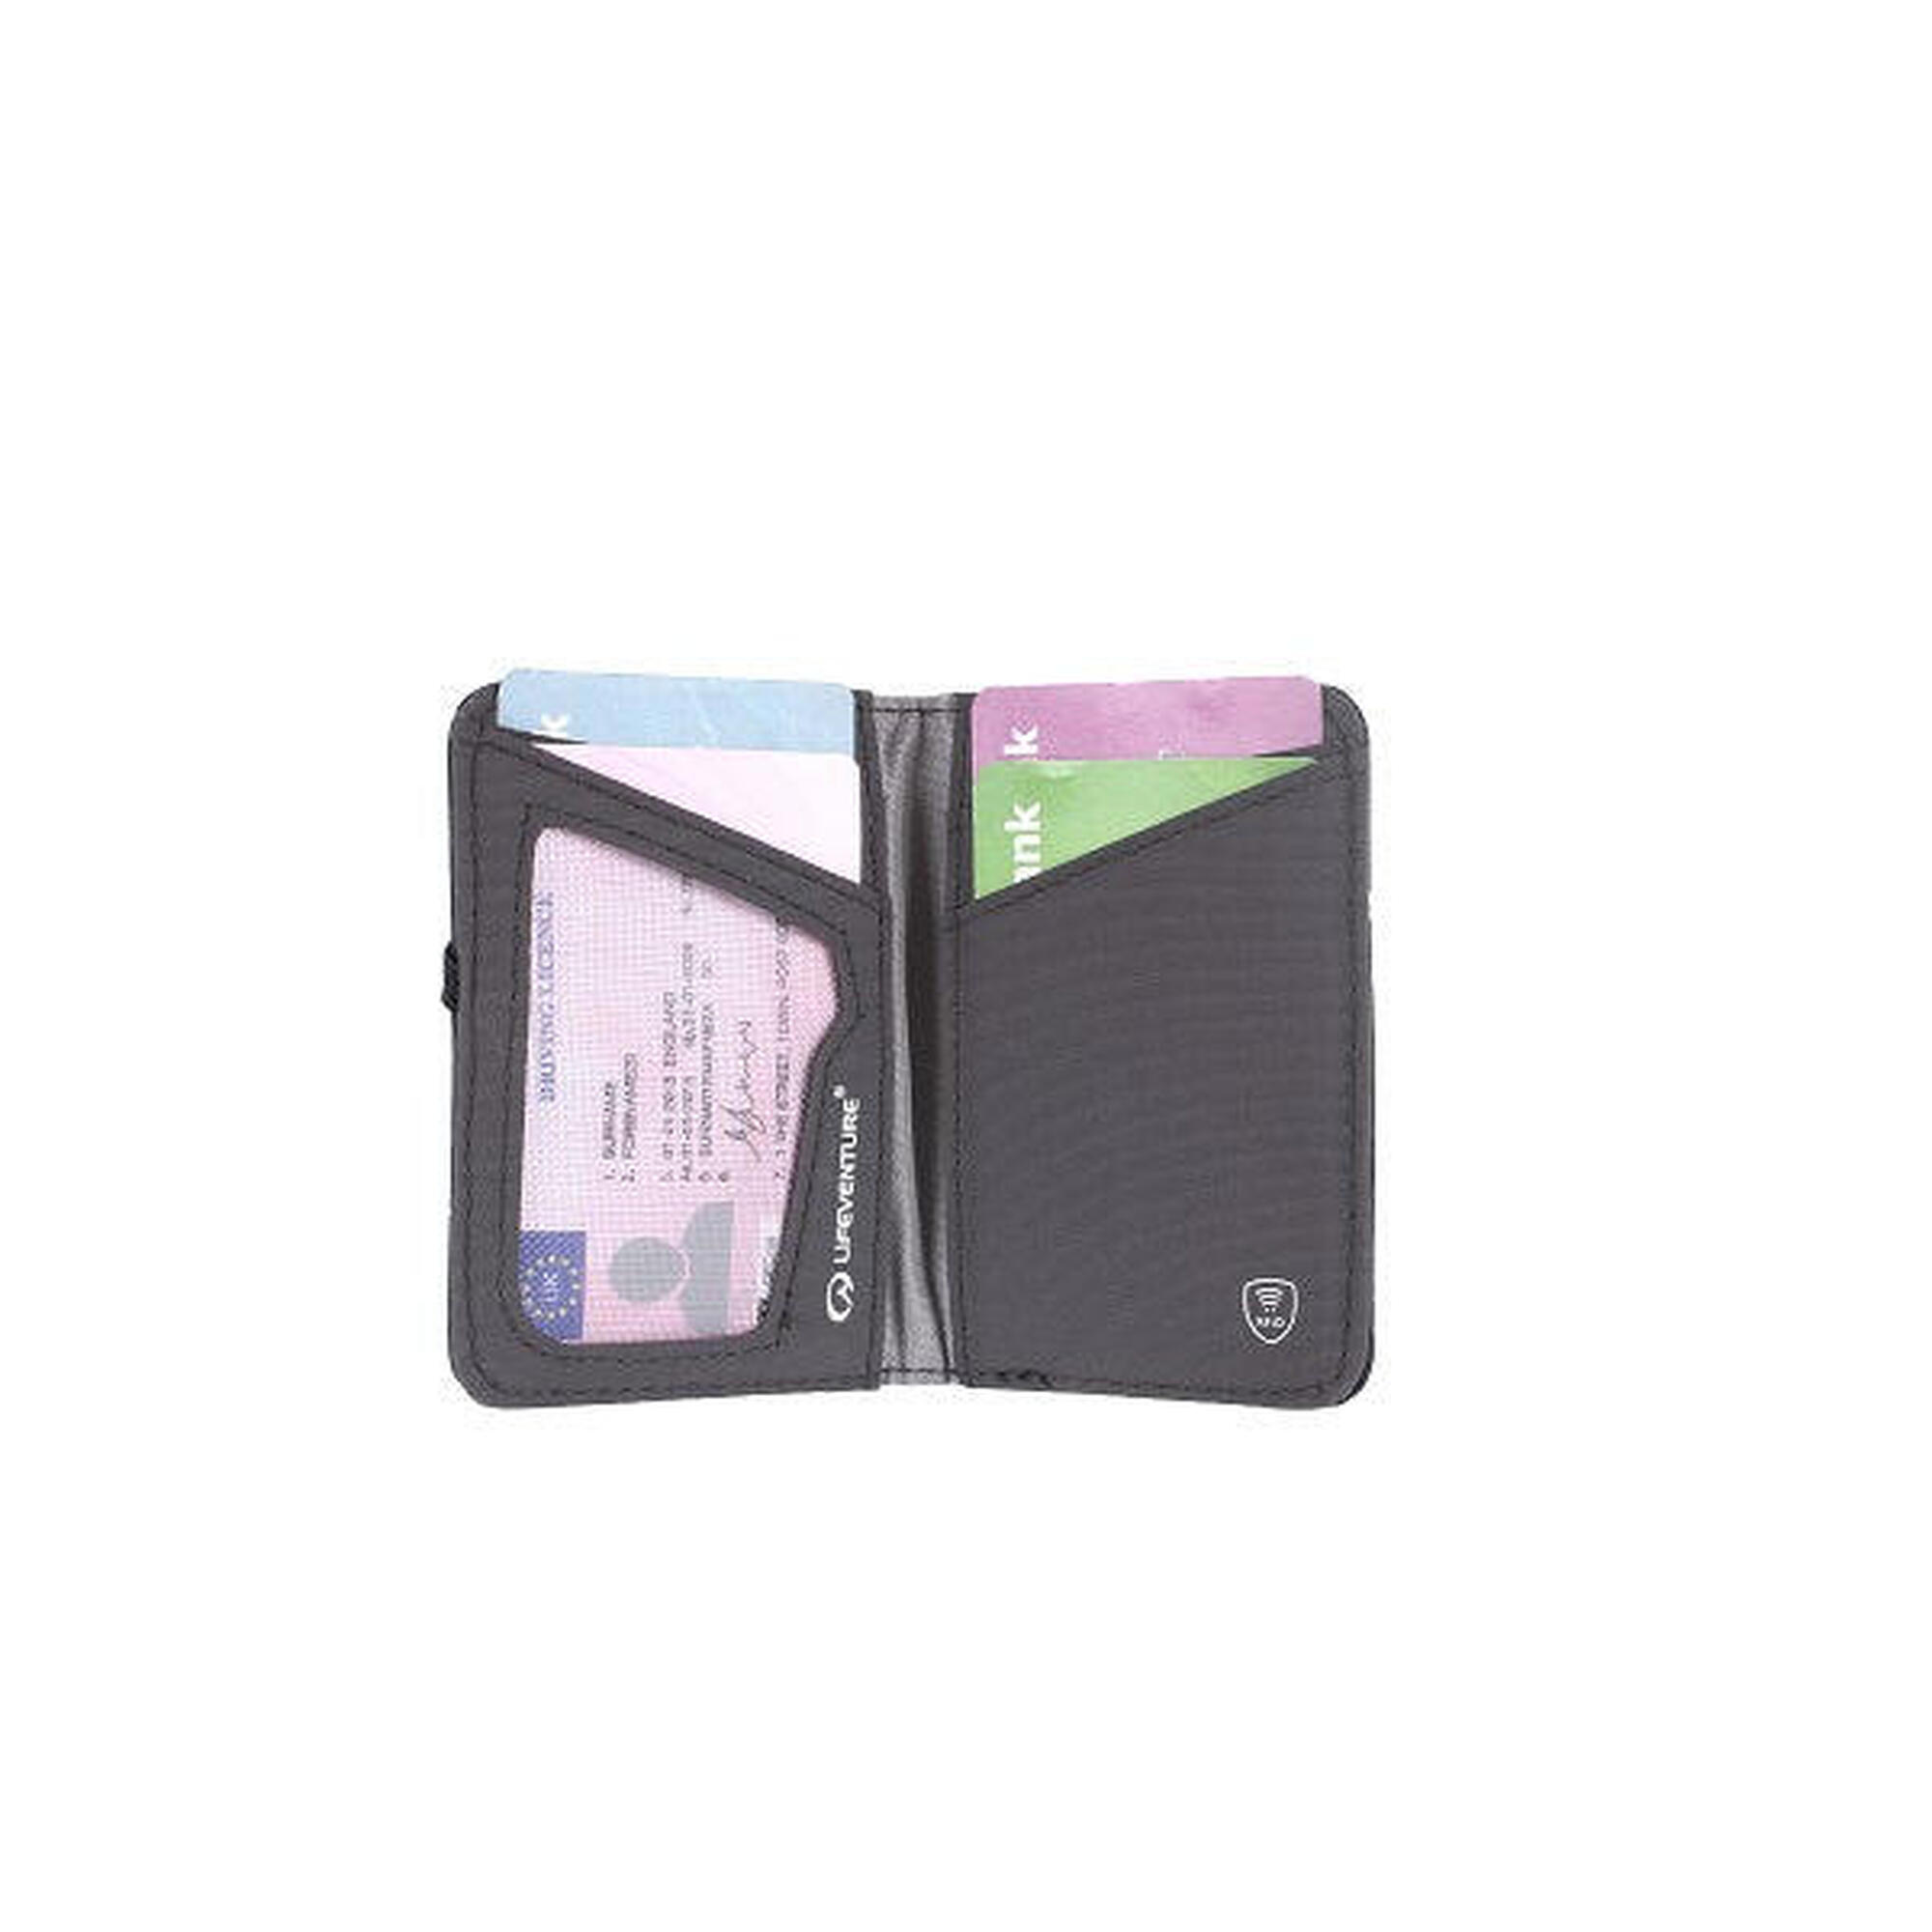 環保防盜RFID卡錢包 - 藍色